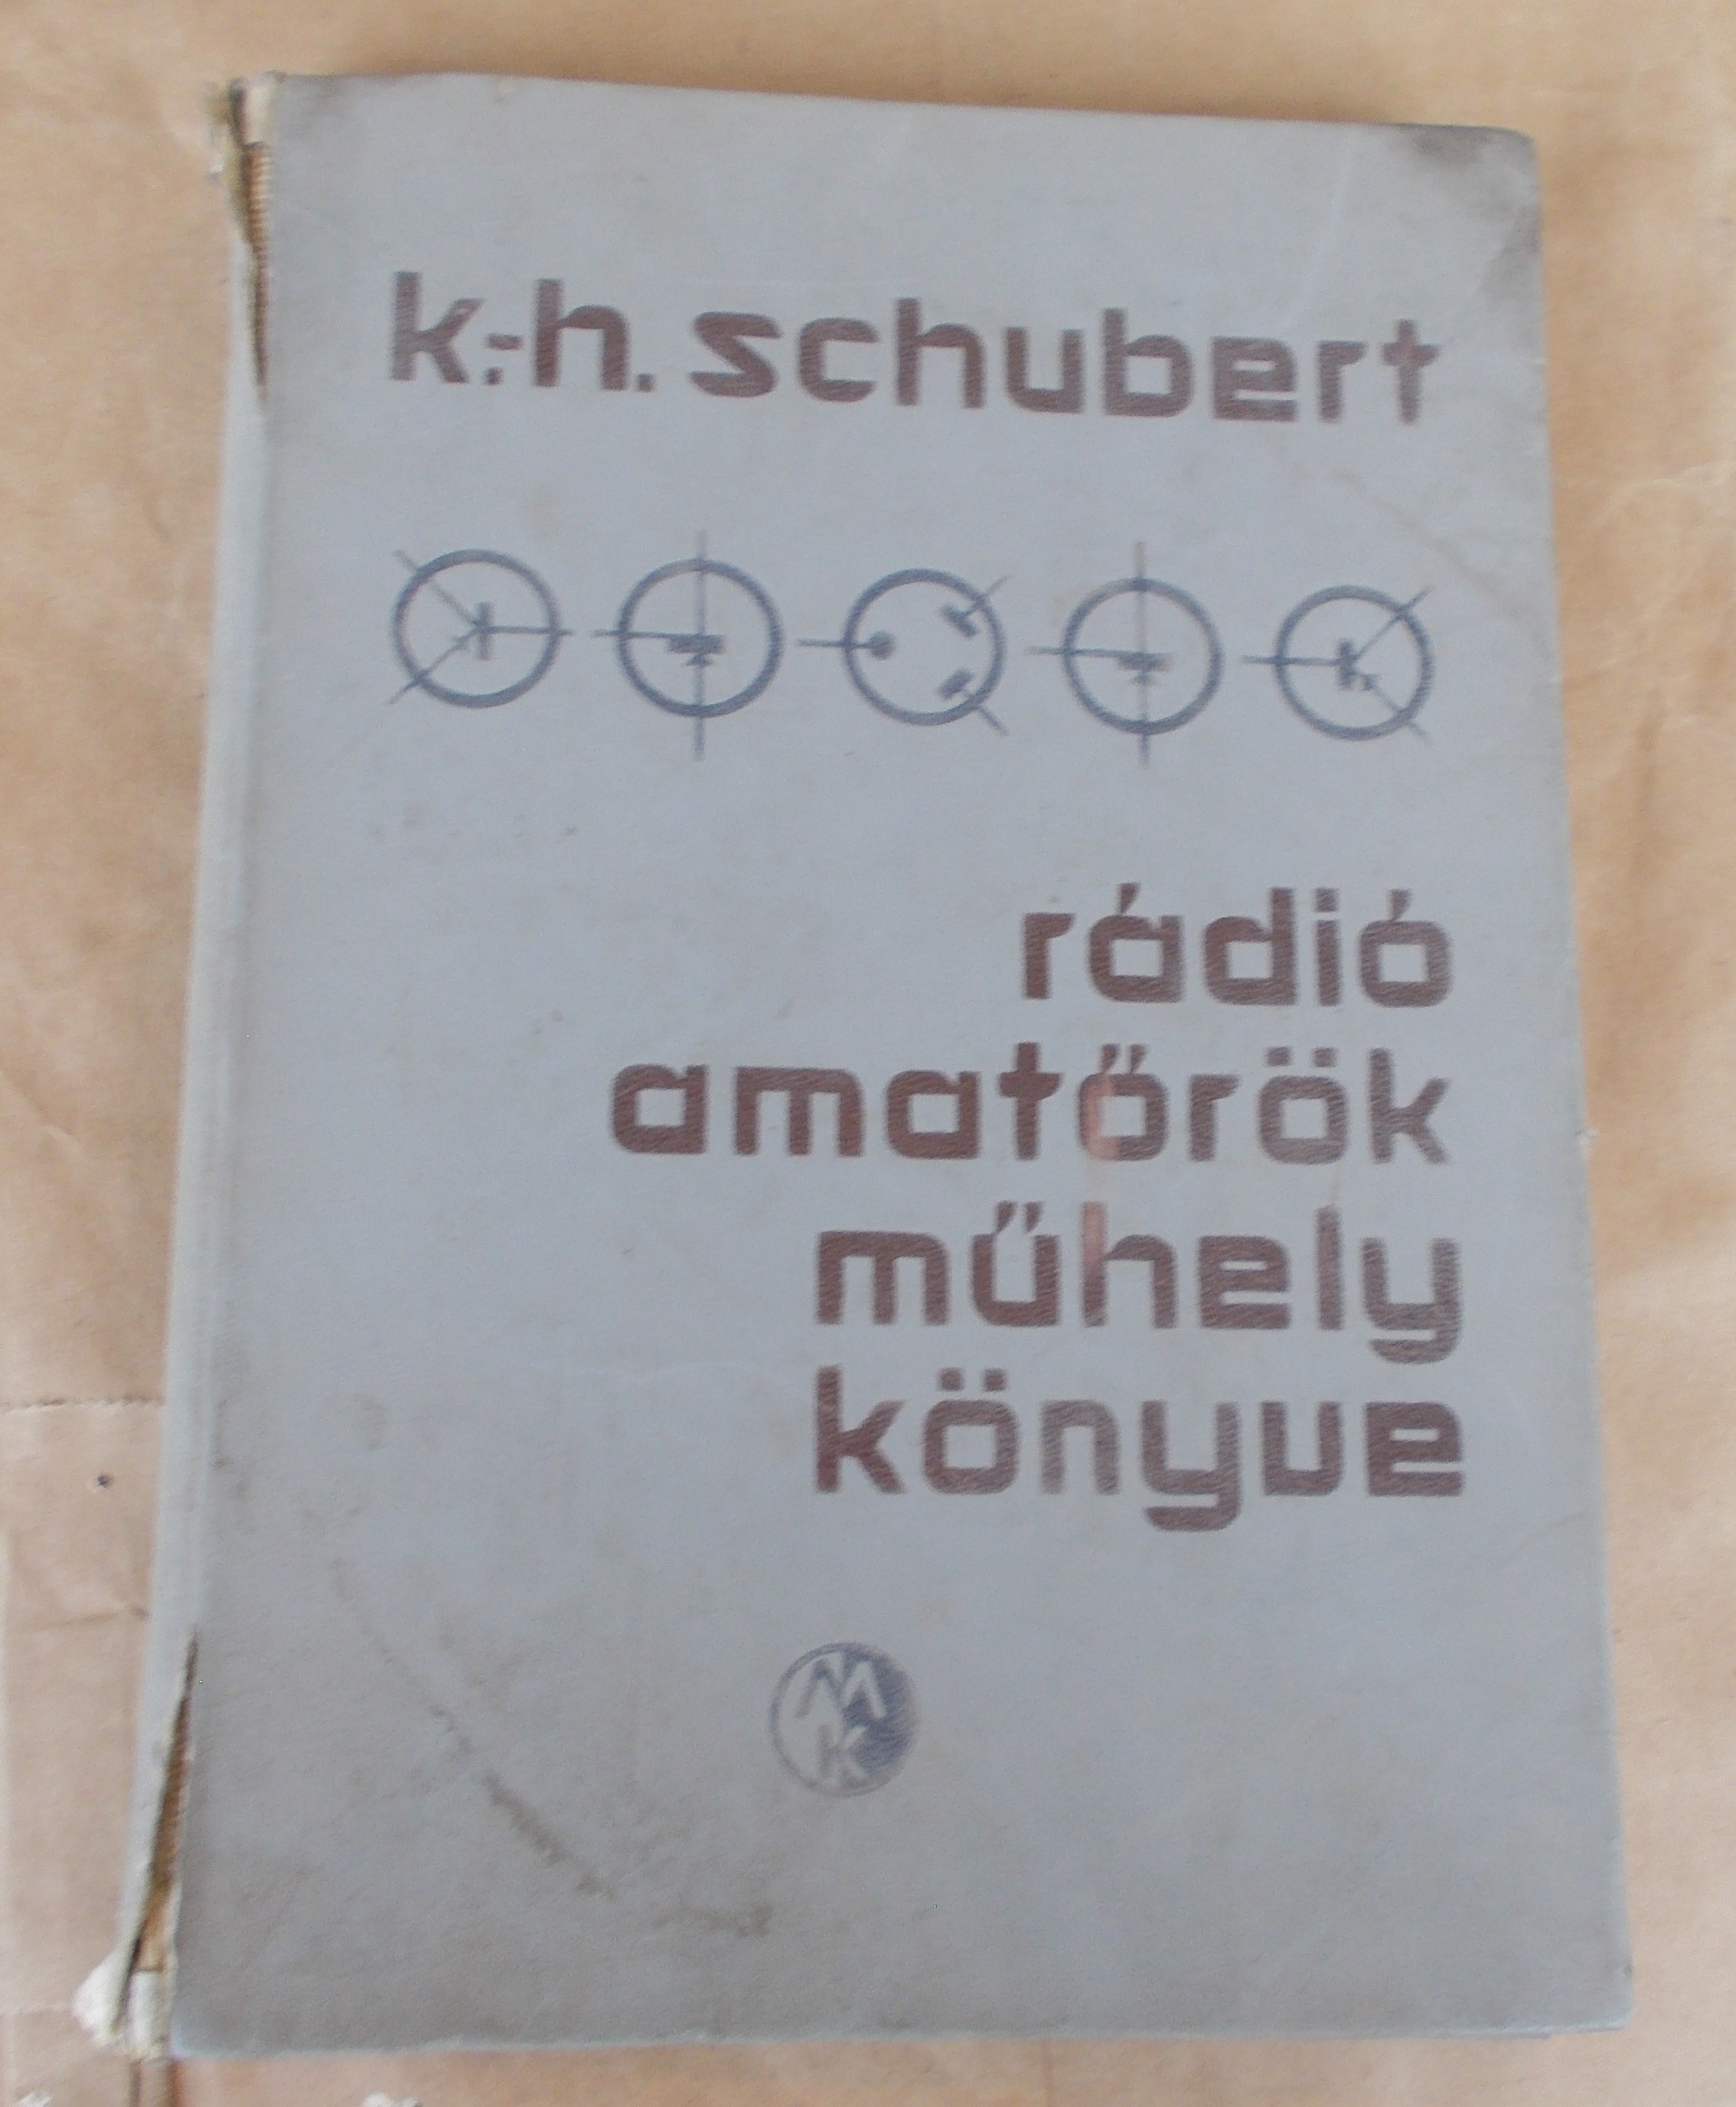 K.-h.schubert:rádió amatőrök műhelykönyve

K.-h.schubert:rádió amatőrök műhelykönyve
A képen látható viseltes, de olvasható állapotban.


